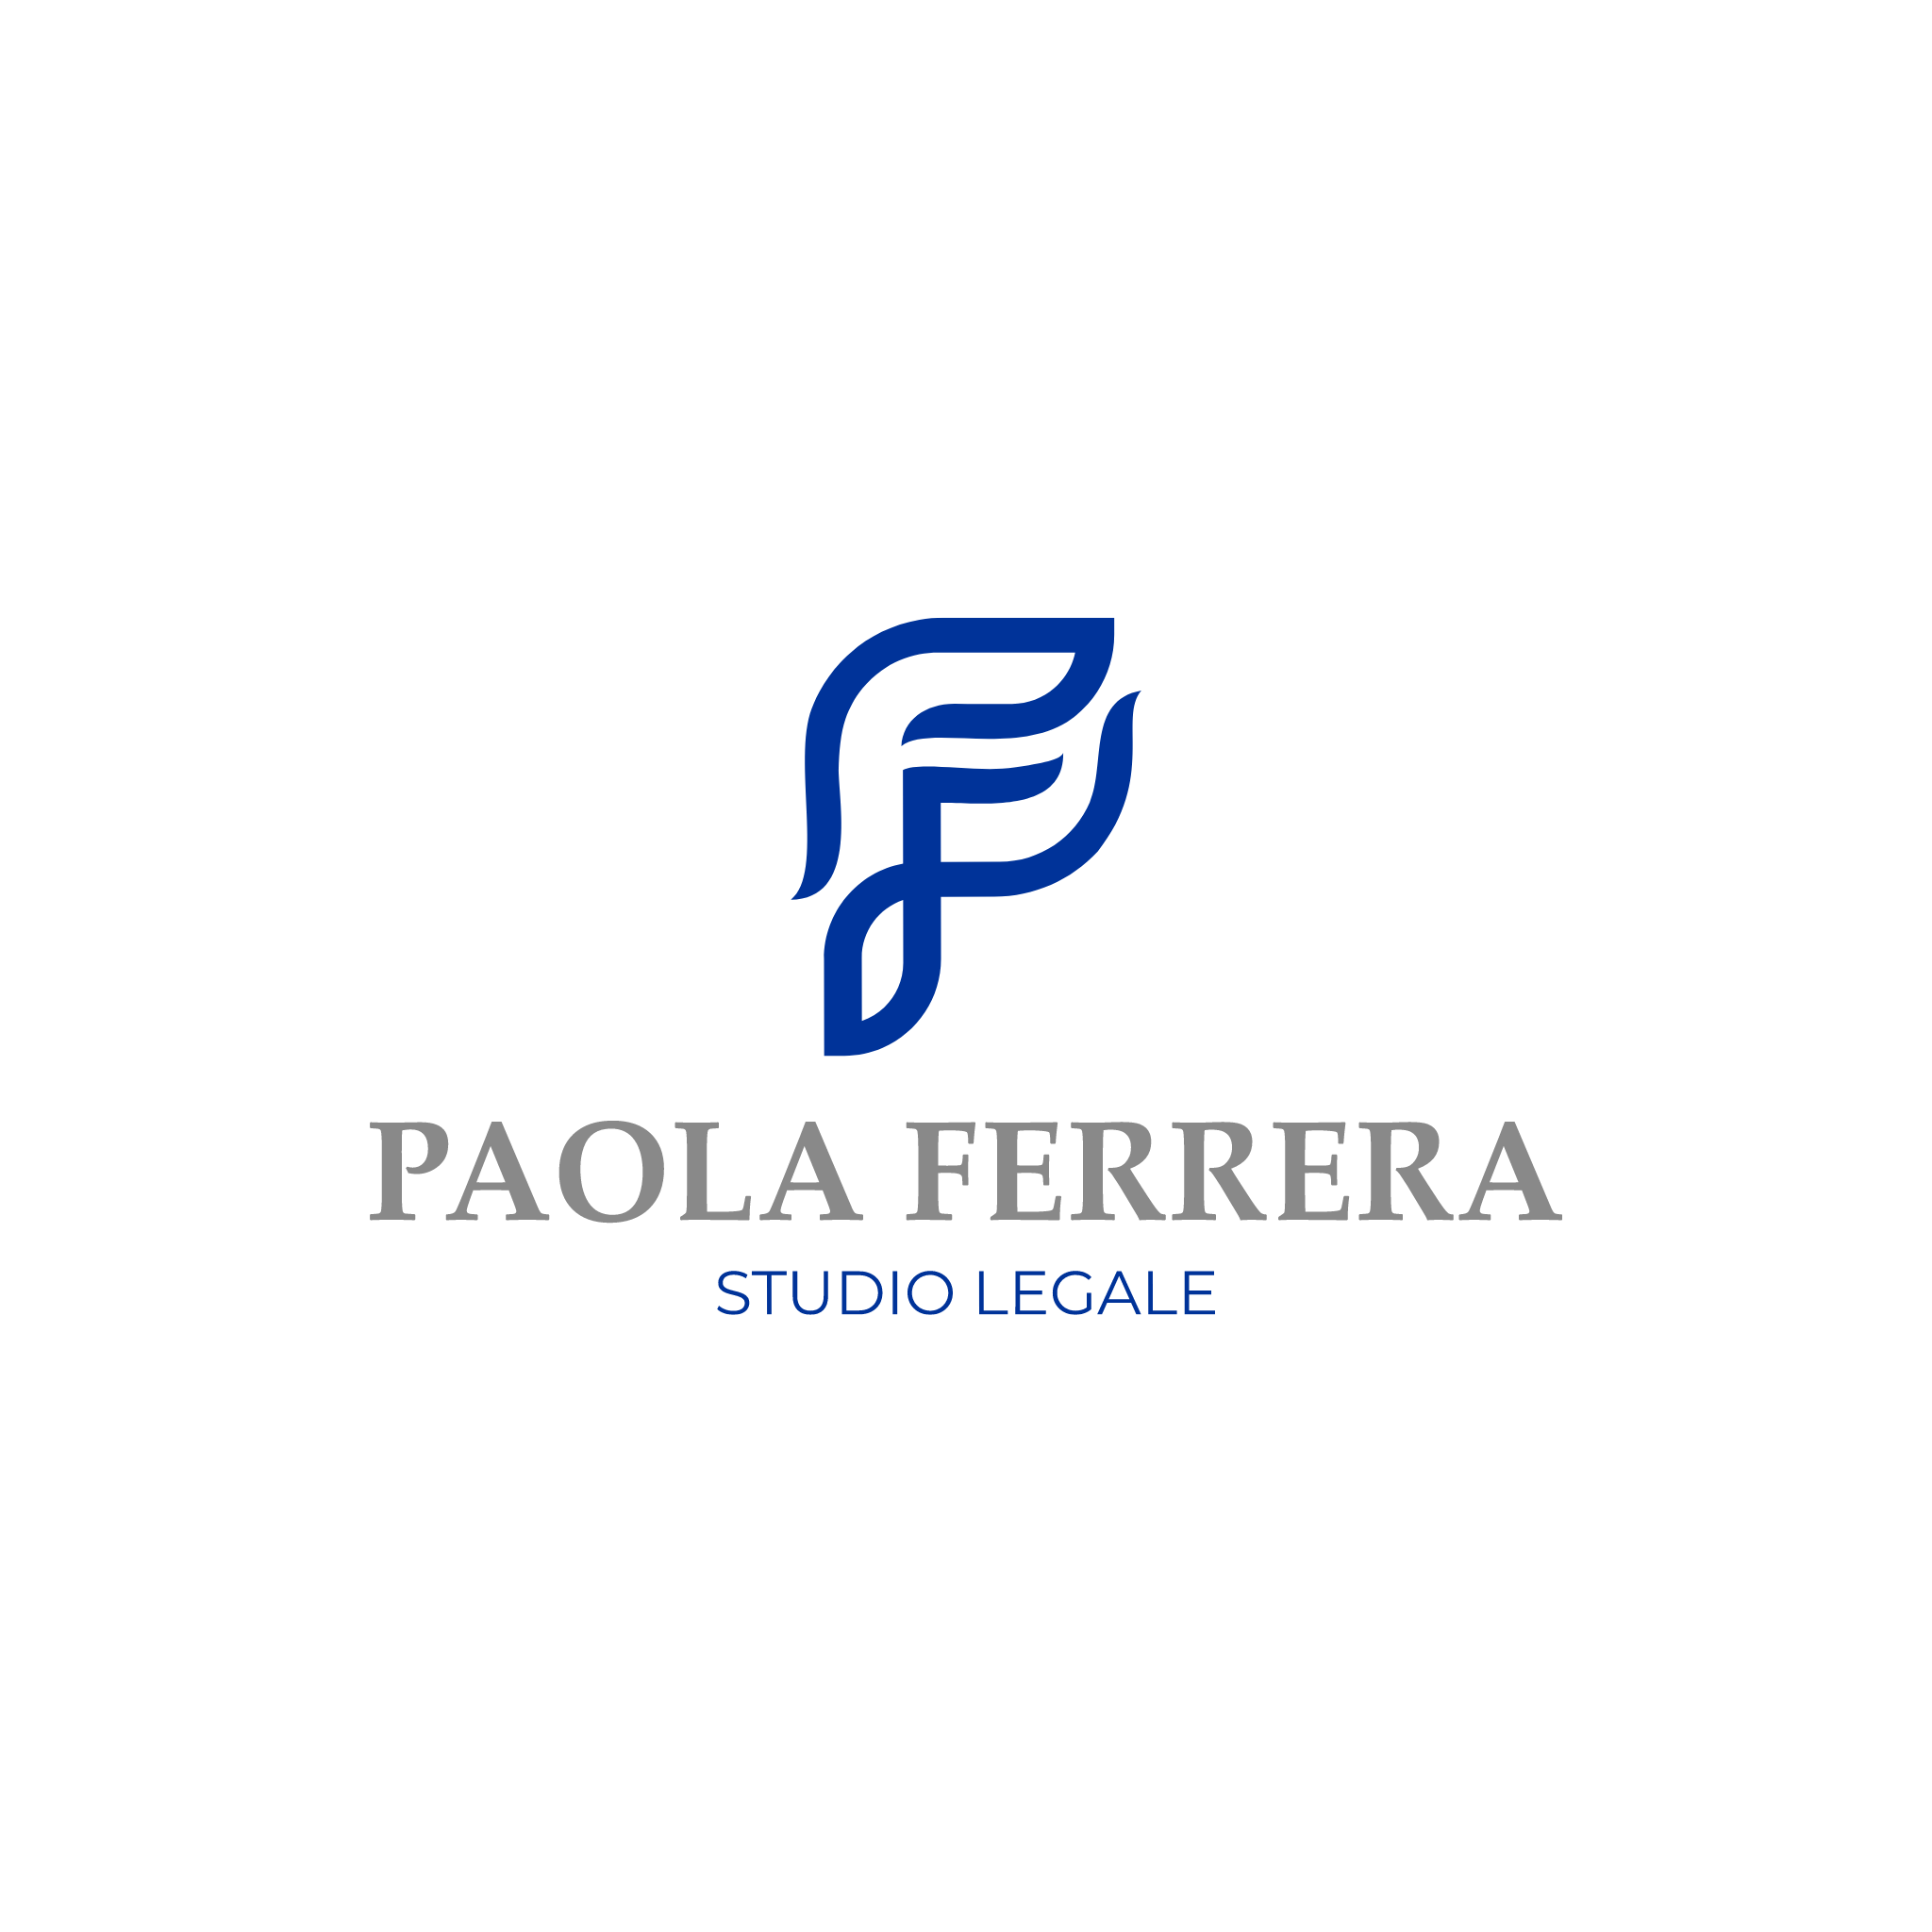 Paola Ferrera Studio Legale - Elaborazione Logo